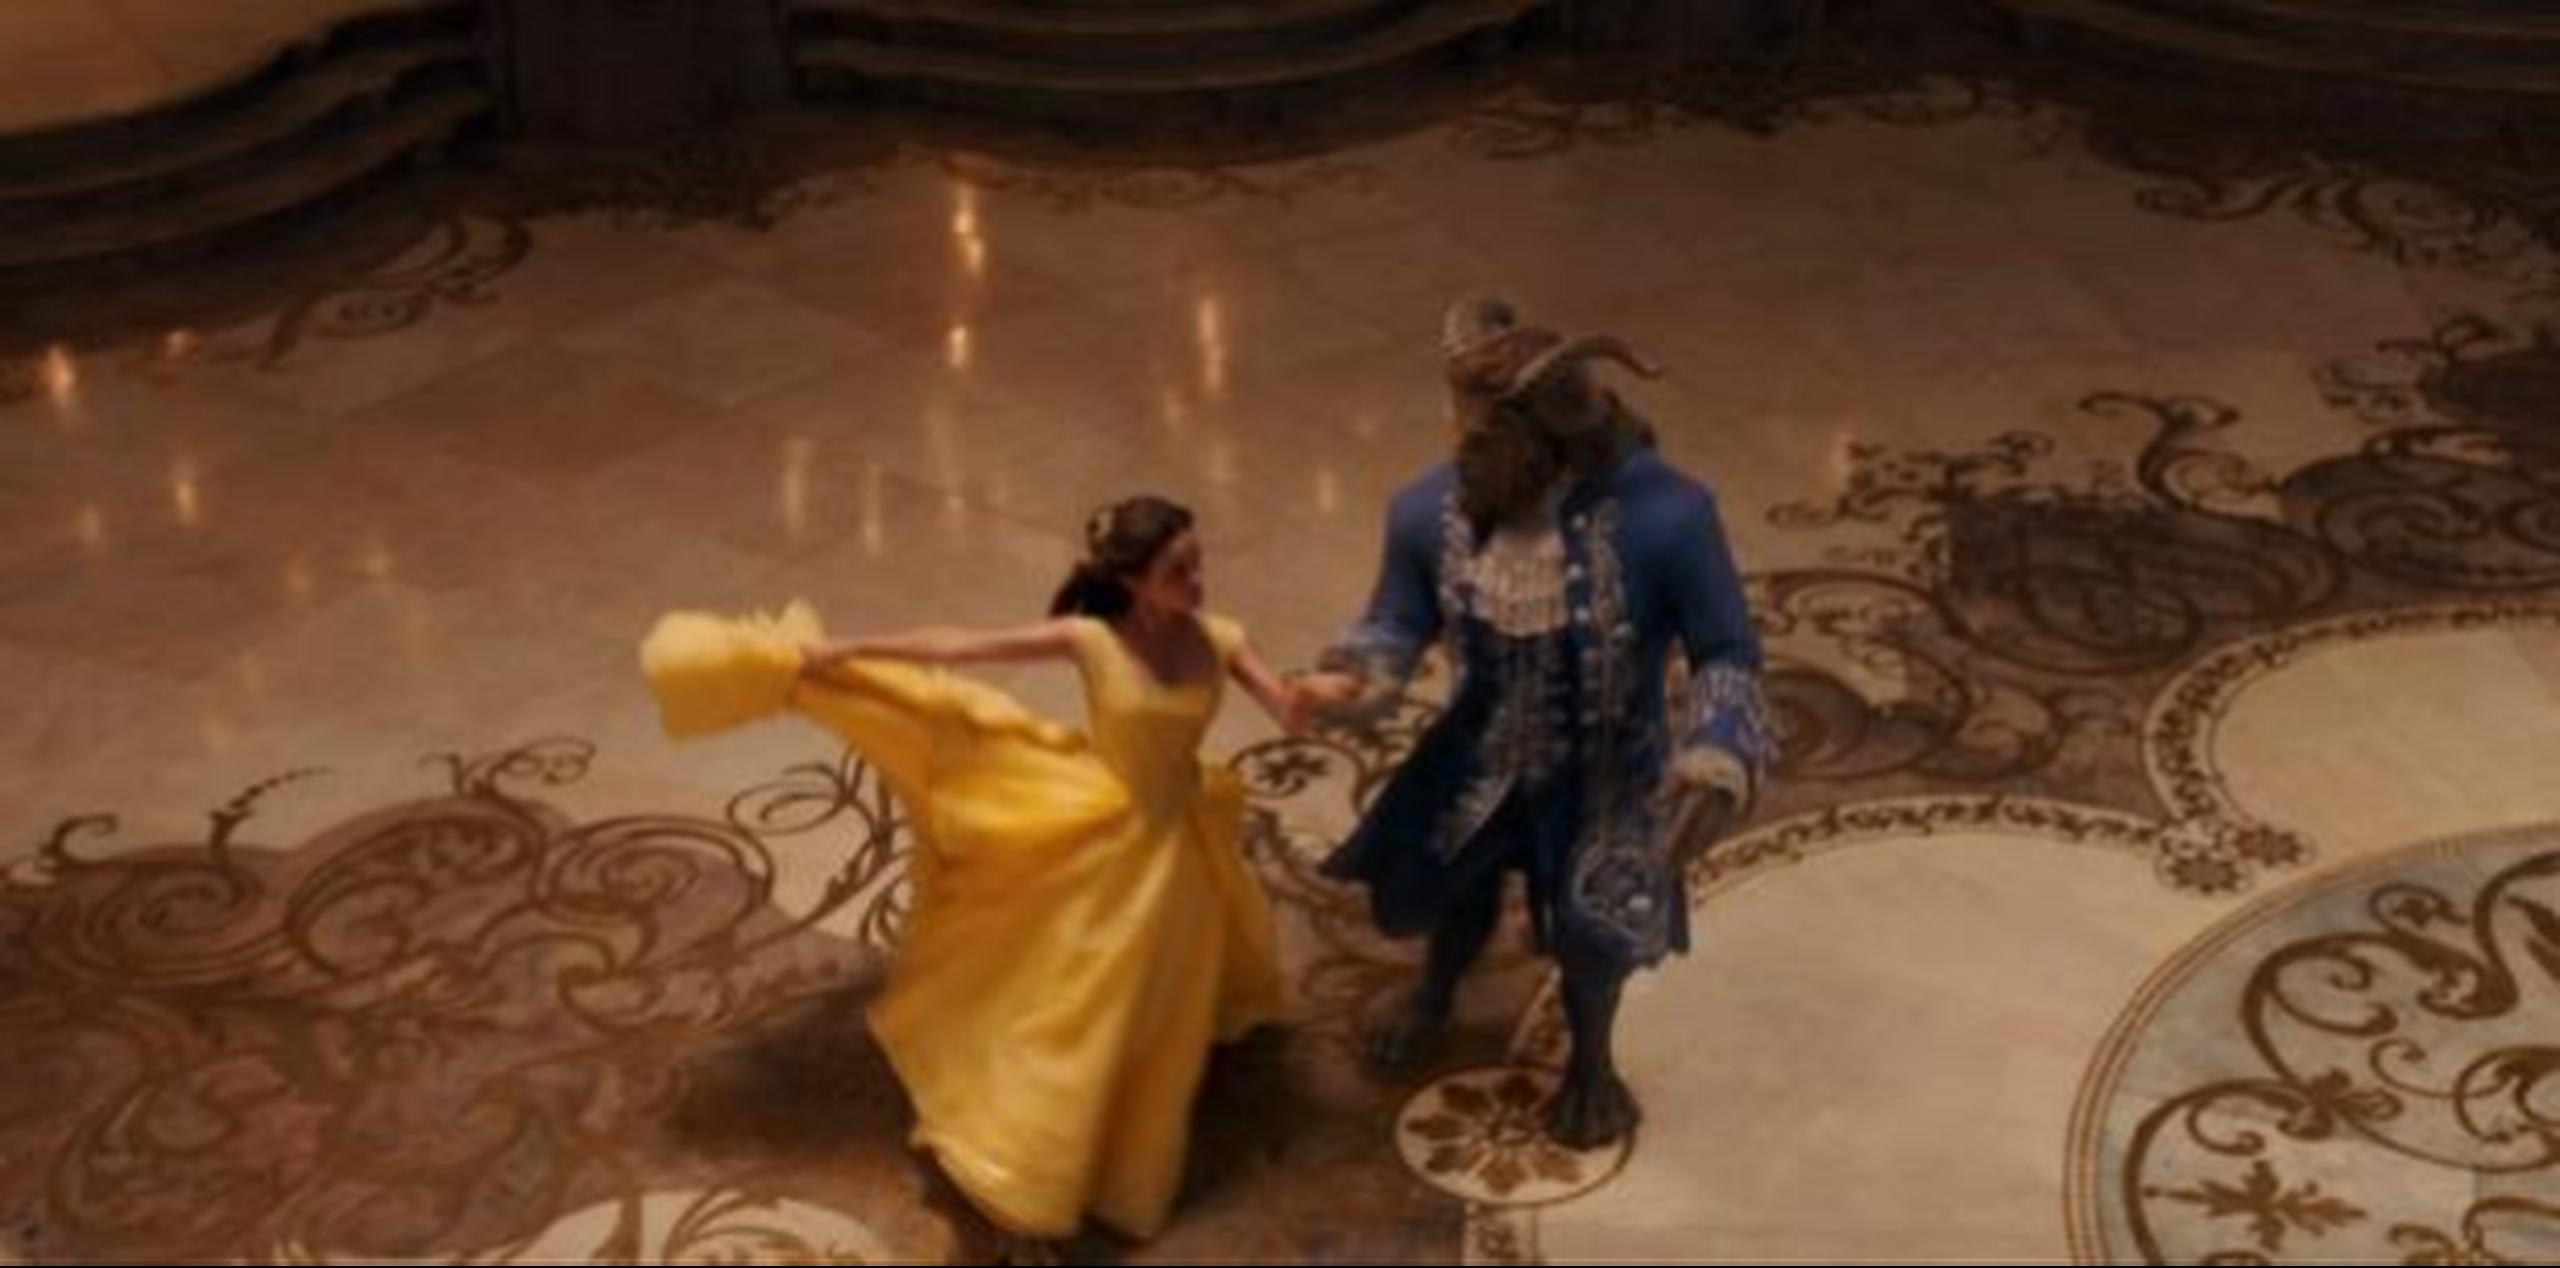 La película "La Bella y la Bestia" tiene un personaje con una escena que se ha considerado como la primera escena gay de Disney. (YouTube)